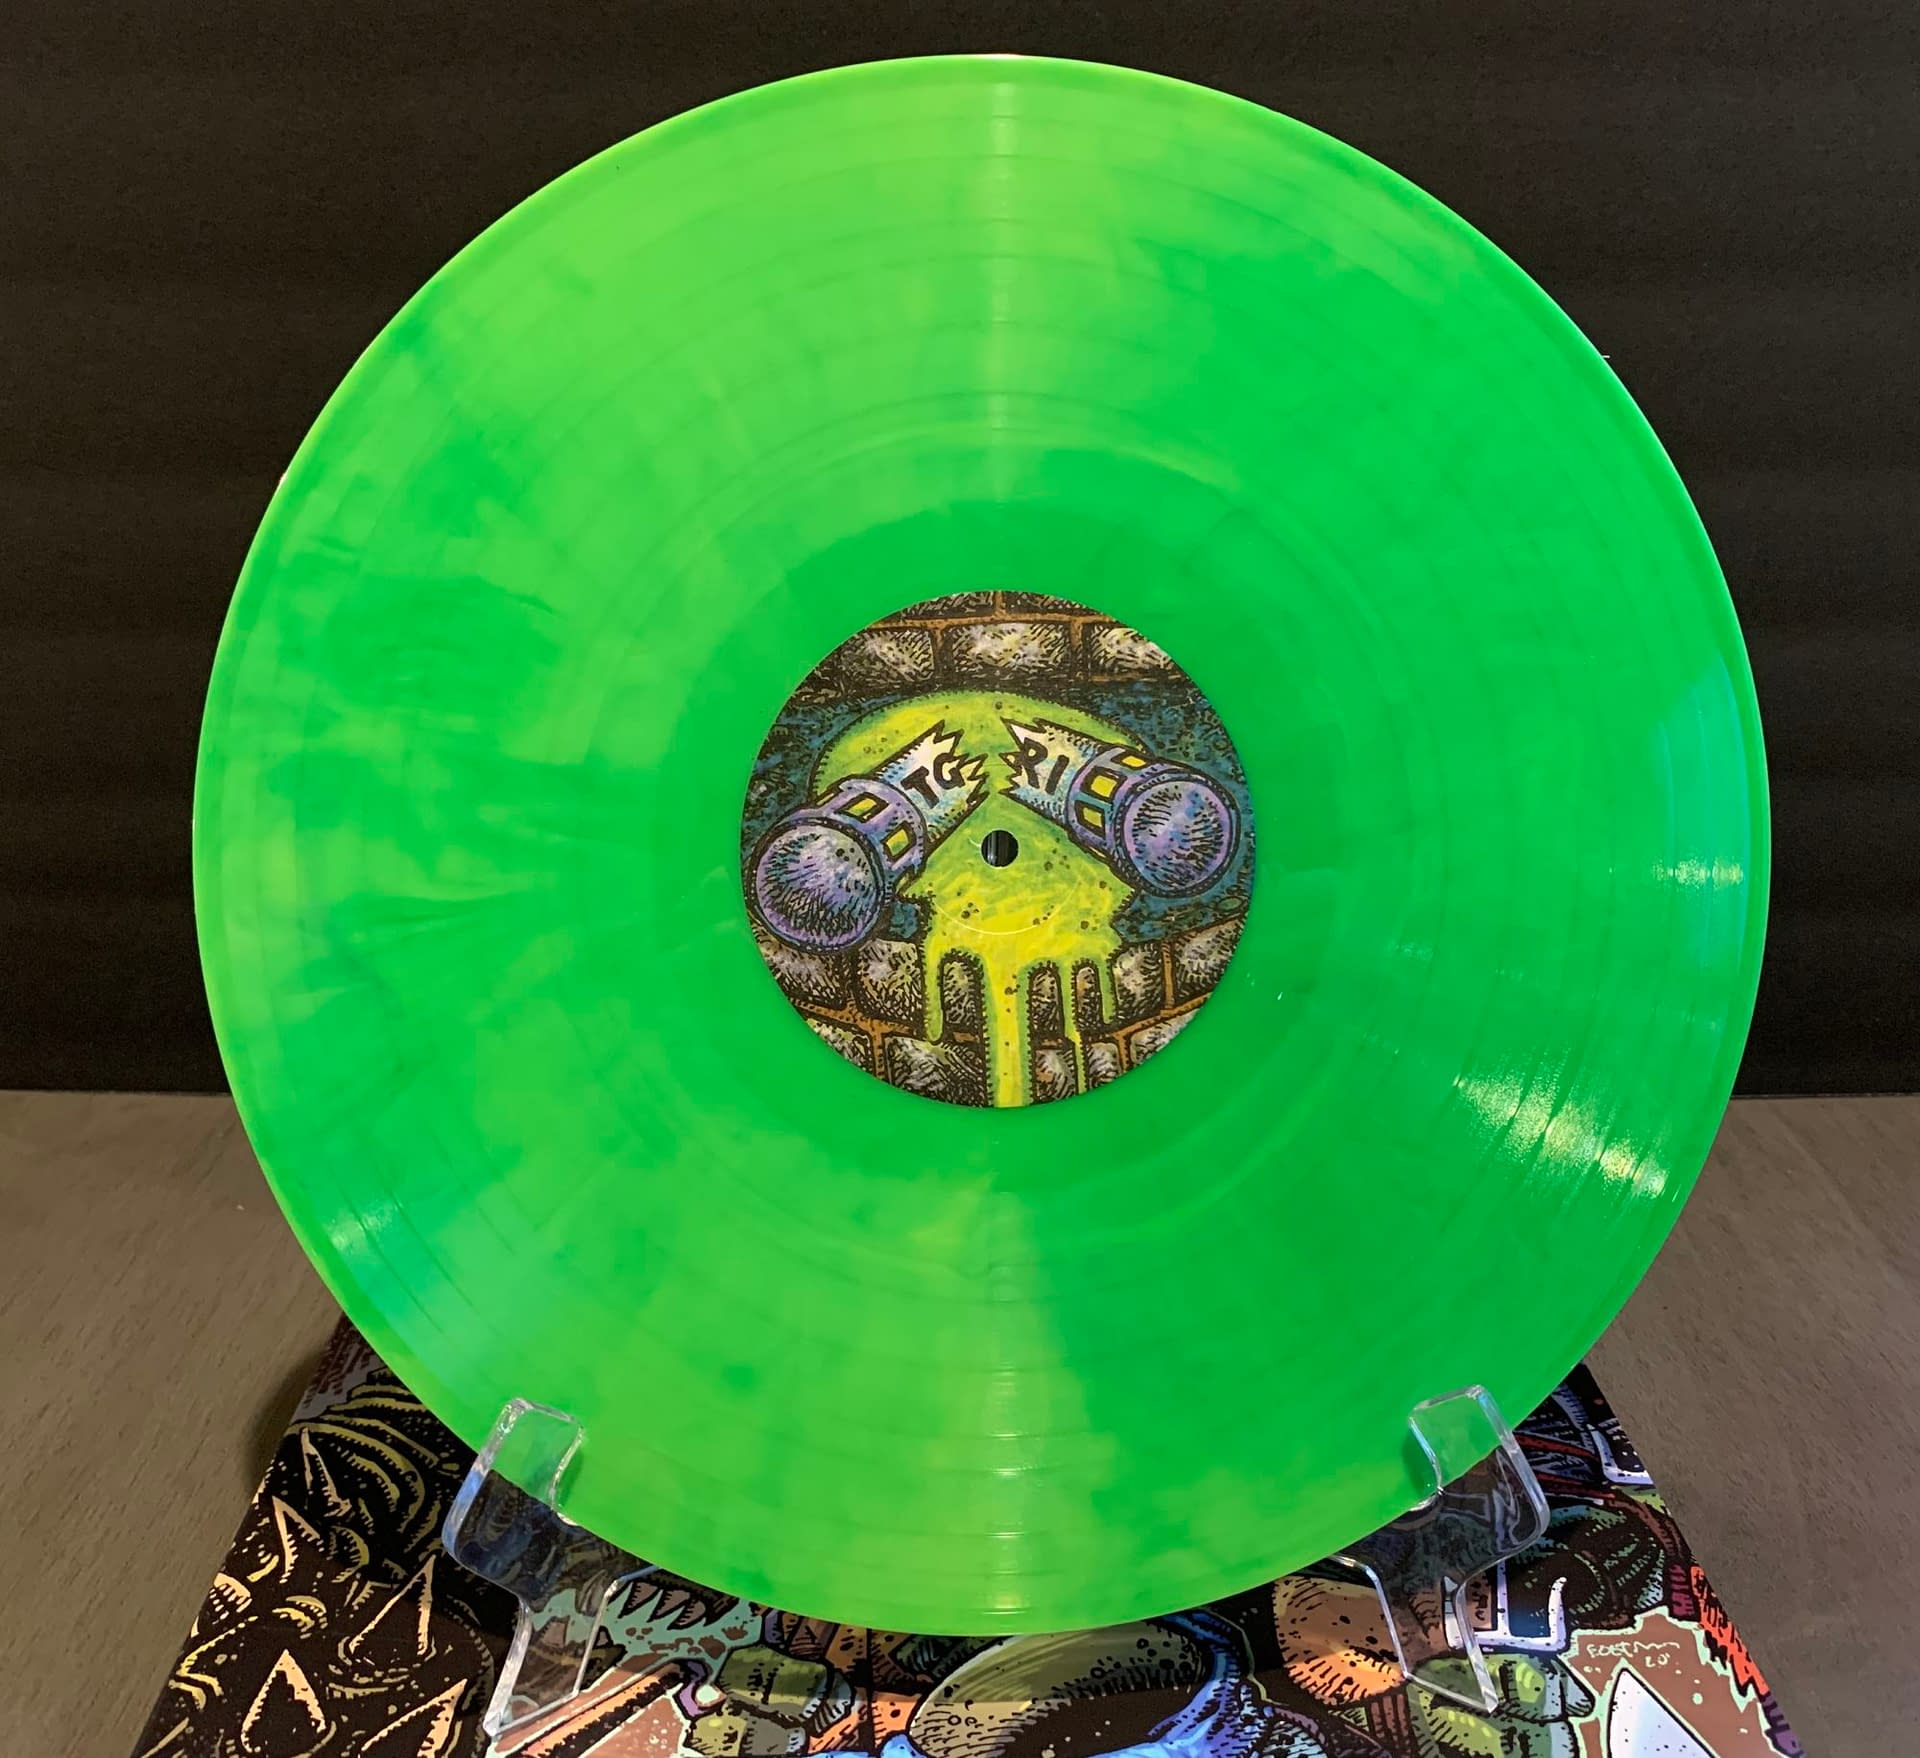 TMNT Fans: Waxwork Records Secret Of The Ooze Vinyl Is Incredible